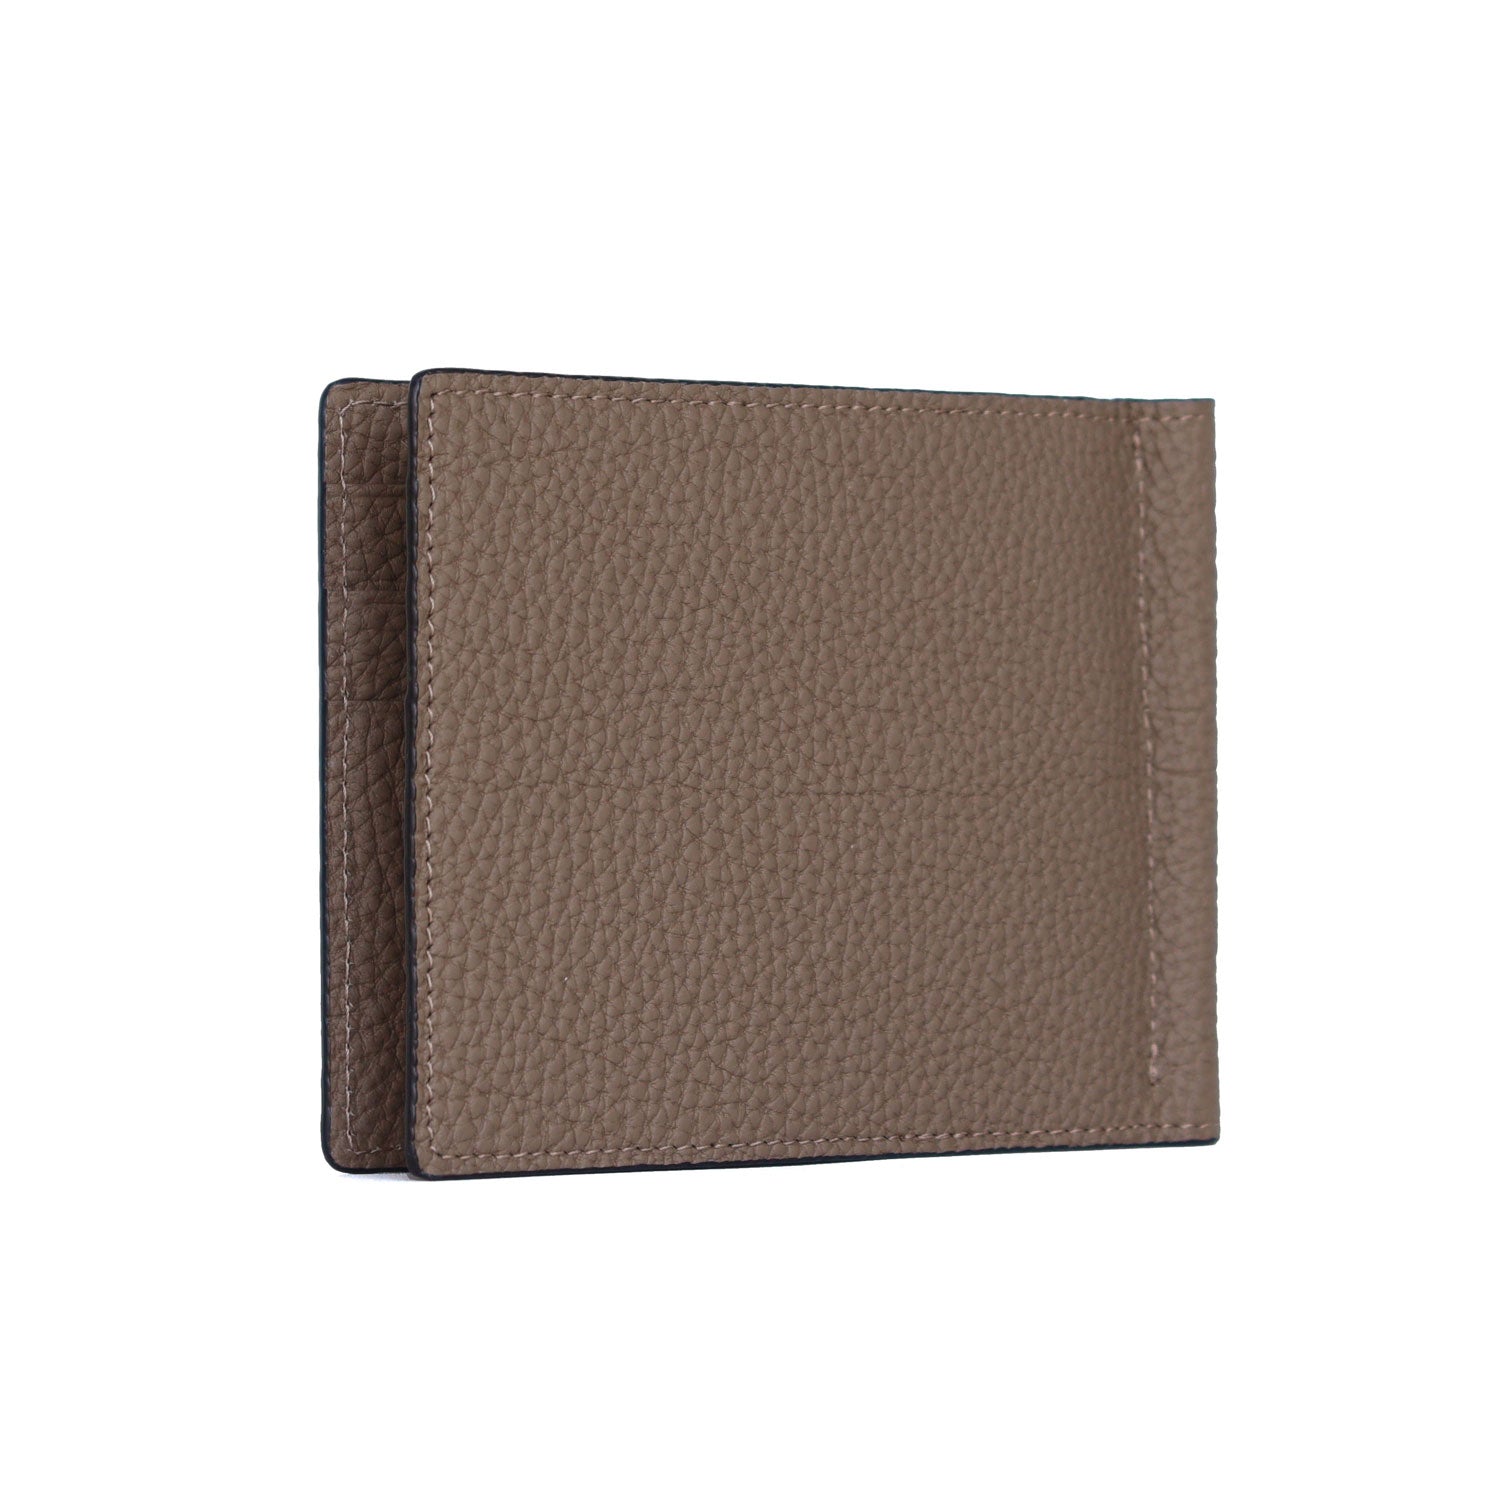 上質なレザーの財布 / カードケース – イタリア(ミラノ)発の高級革製品